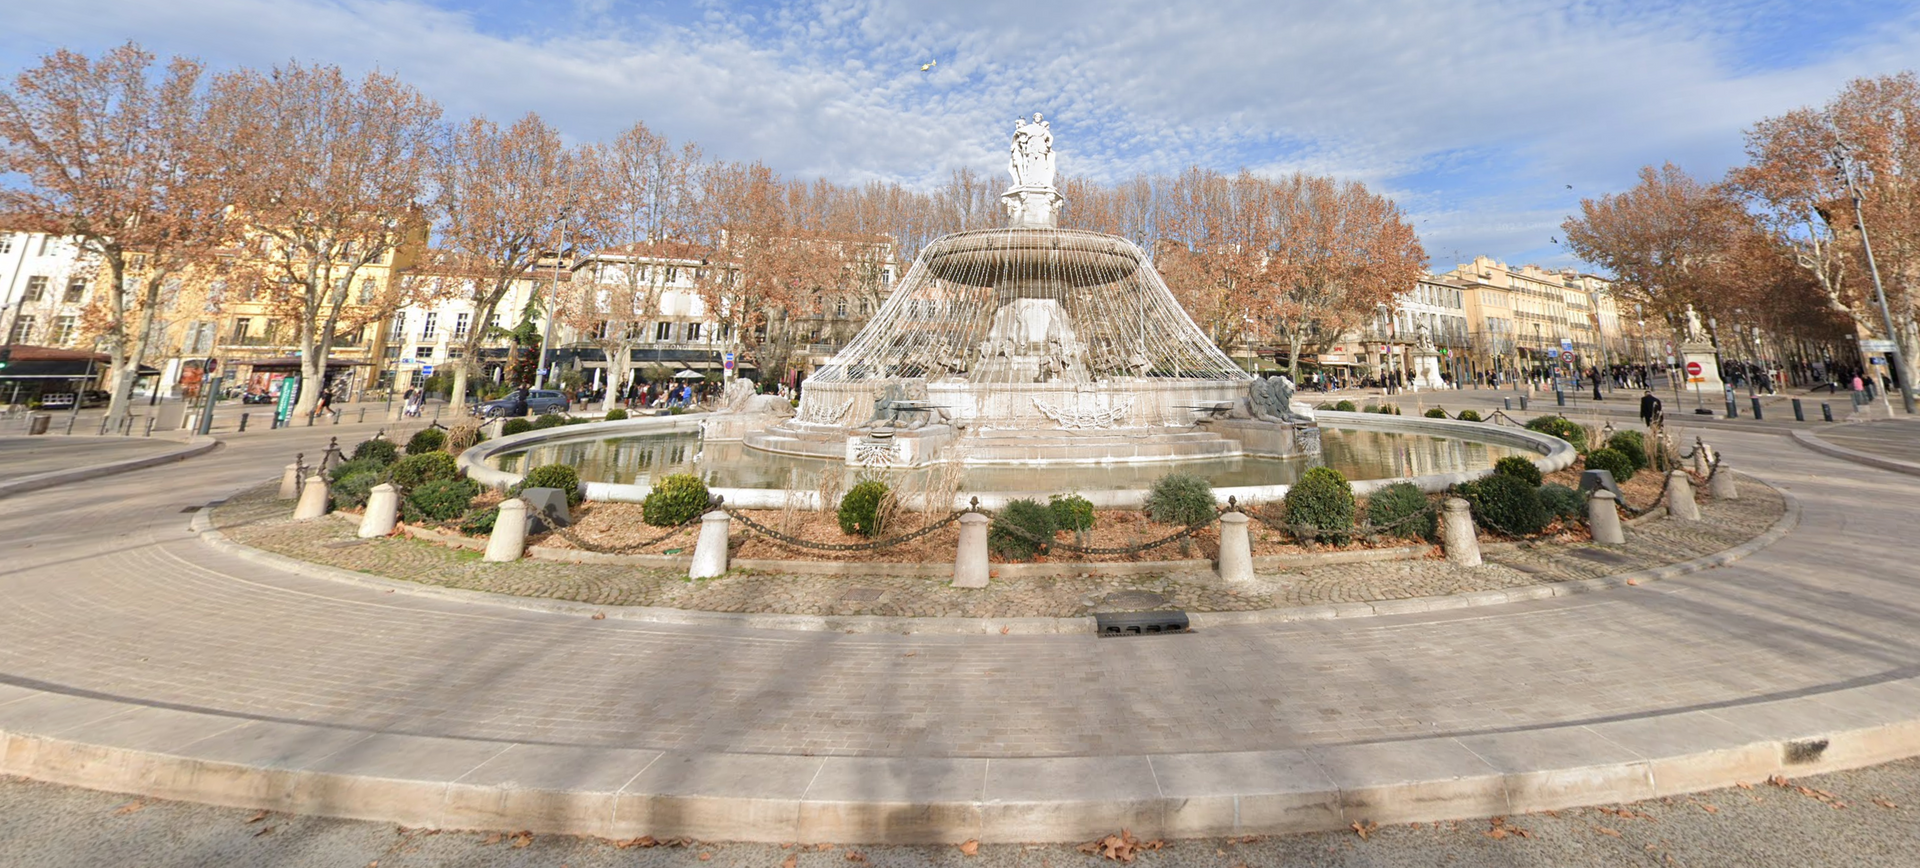 Fontaine de la Rotonde by Google Earth